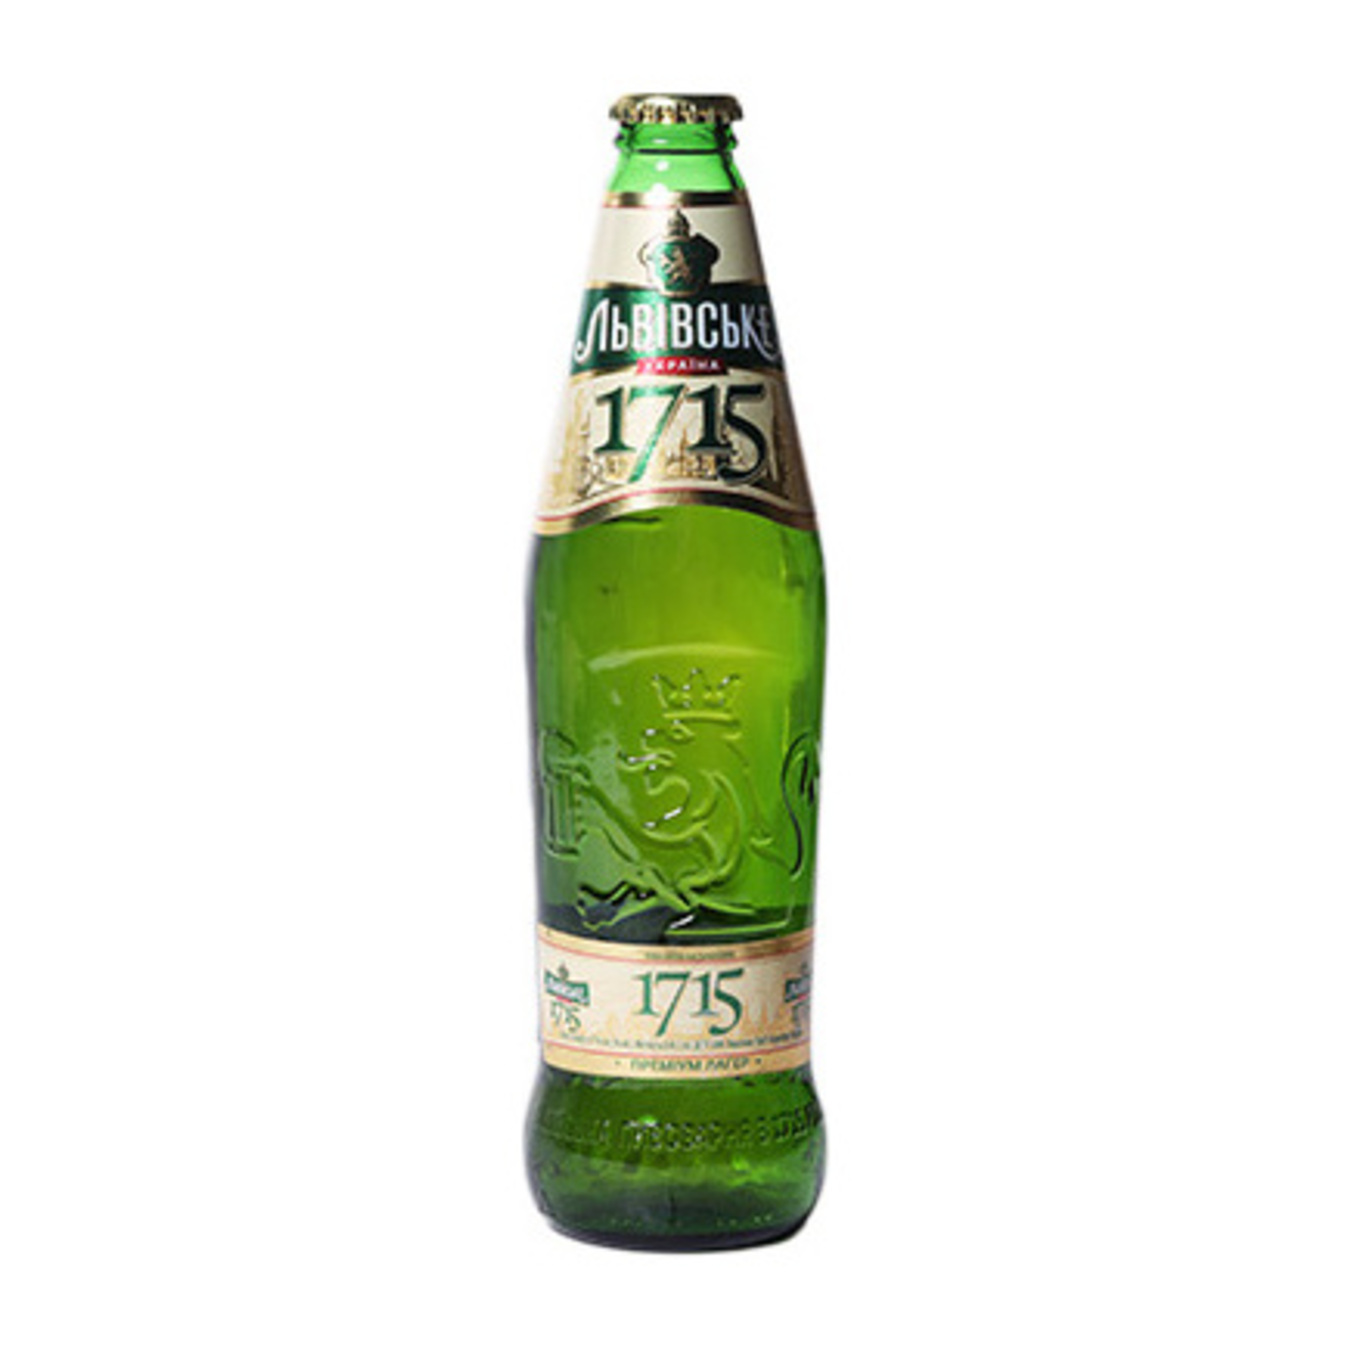 Пиво Львовское 1715 светлое пастеризованное 4,7% 0,45л